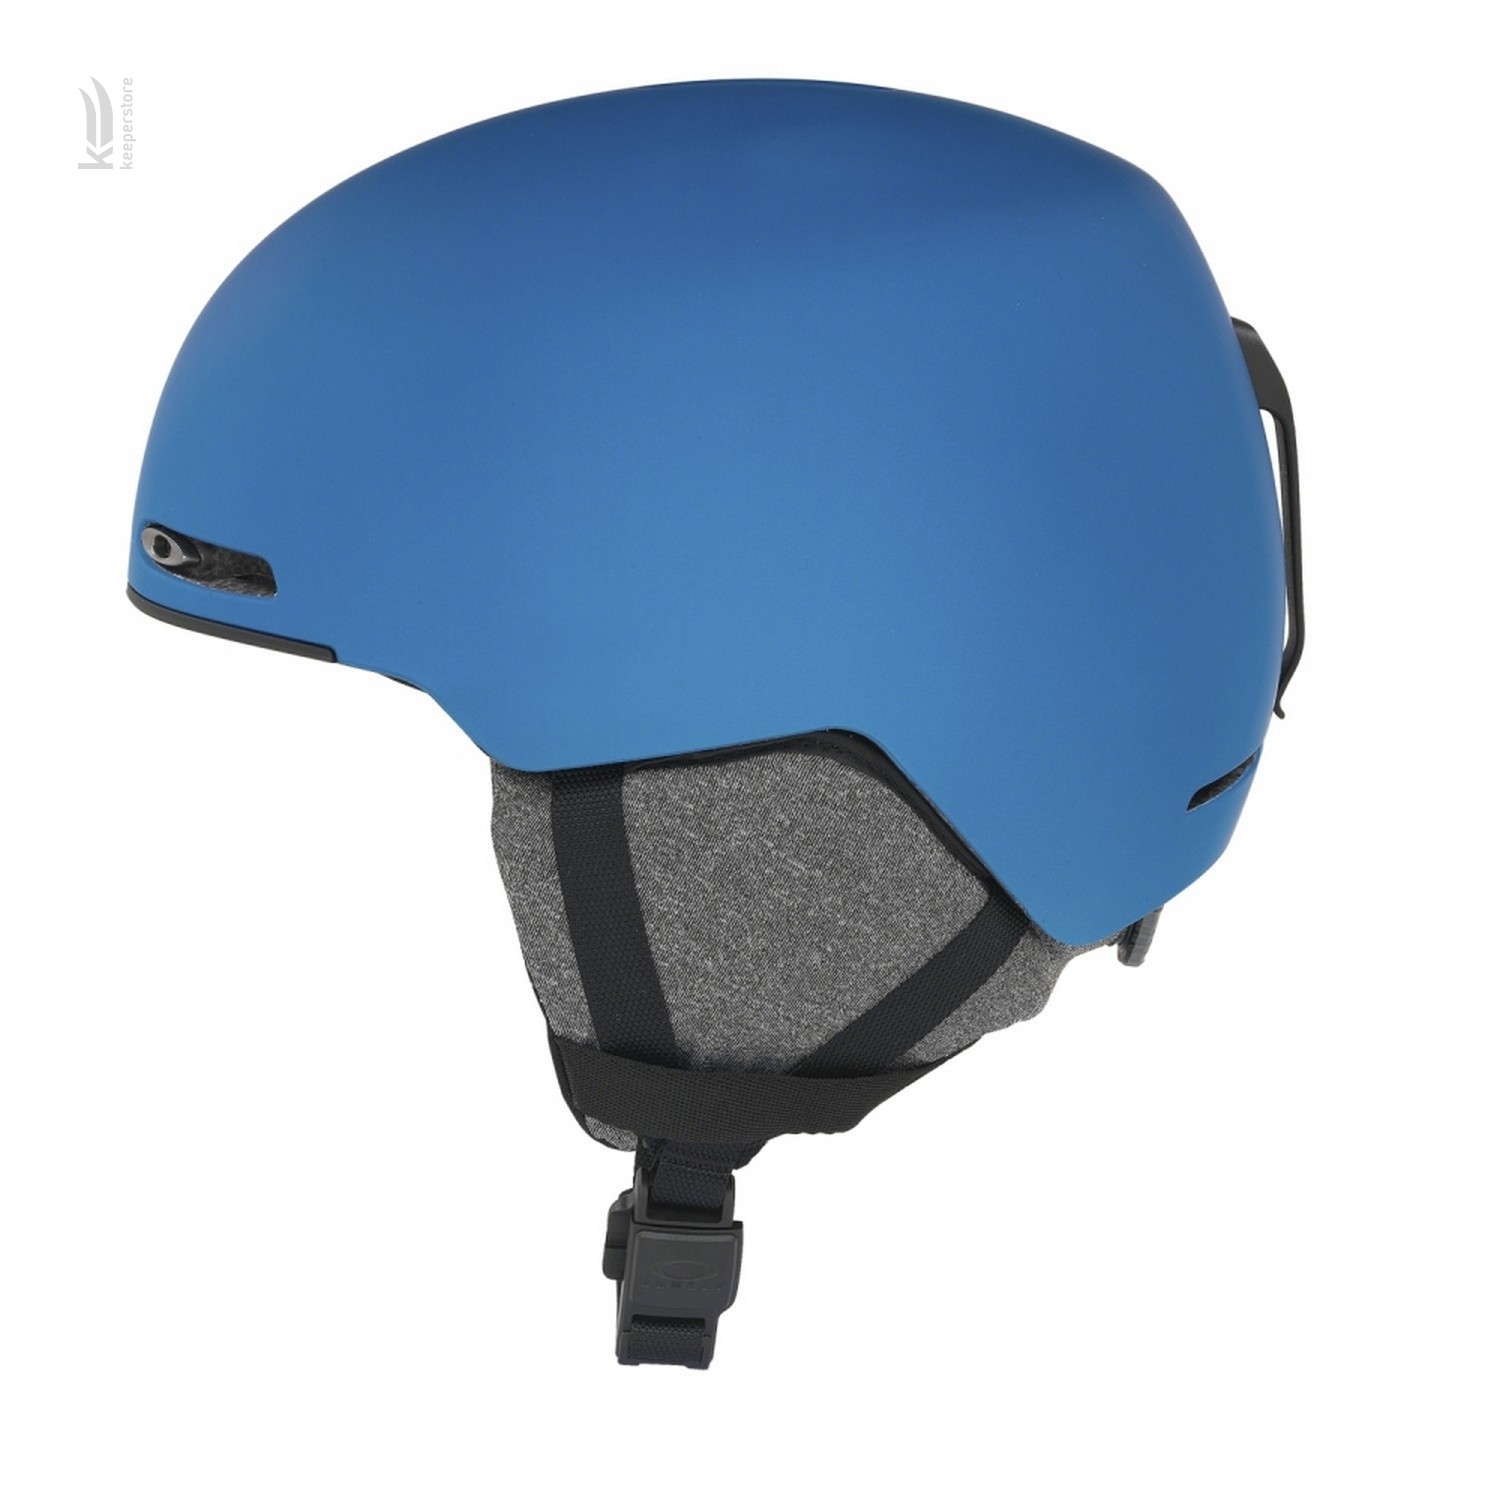 Отзывы шлем oakley для сноубординга Oakley Mod 1 Poseidon 19/20 в Украине